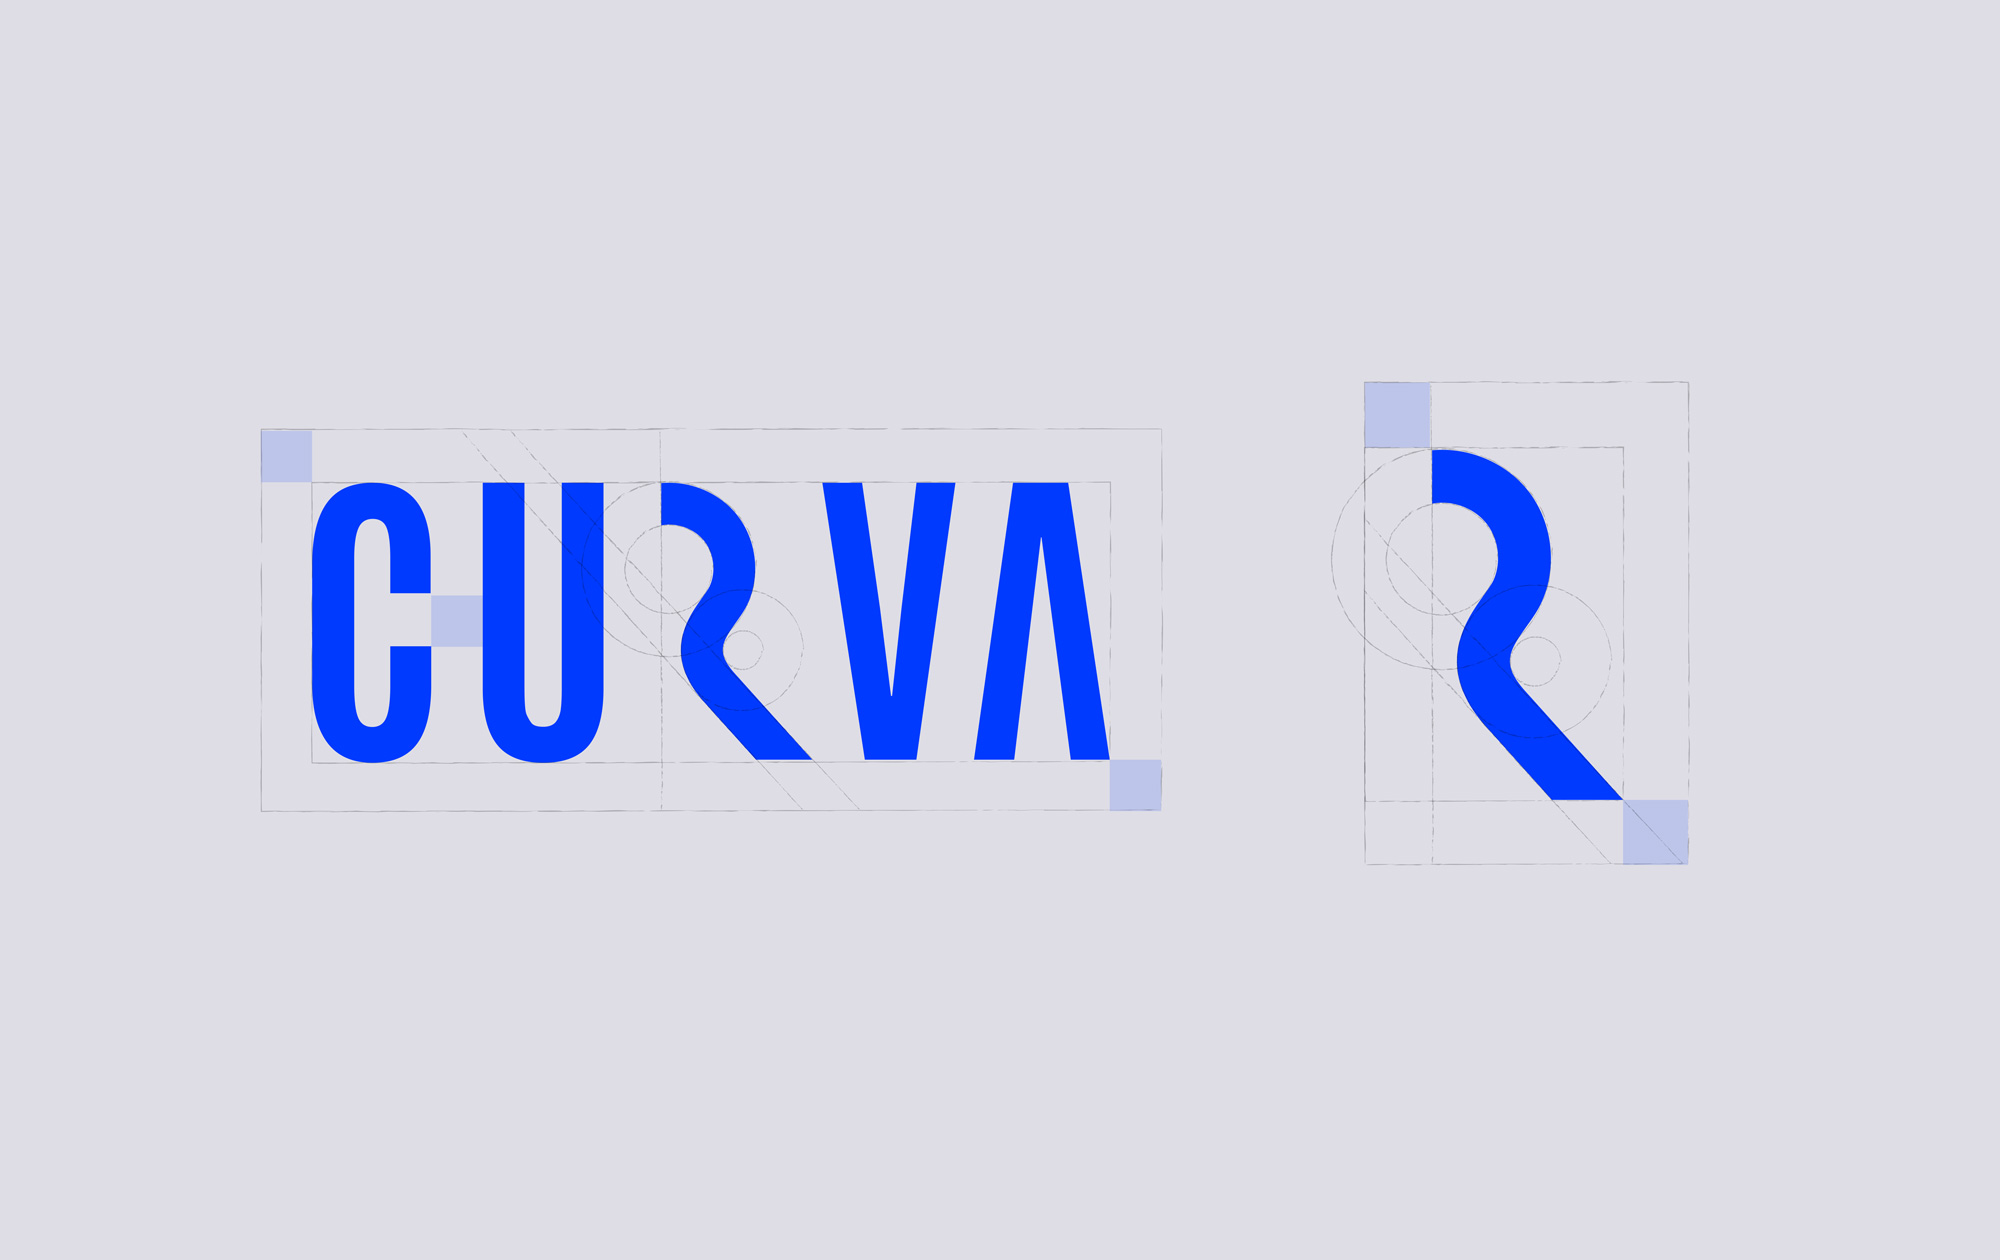 Curva - Contemporary Dance Company